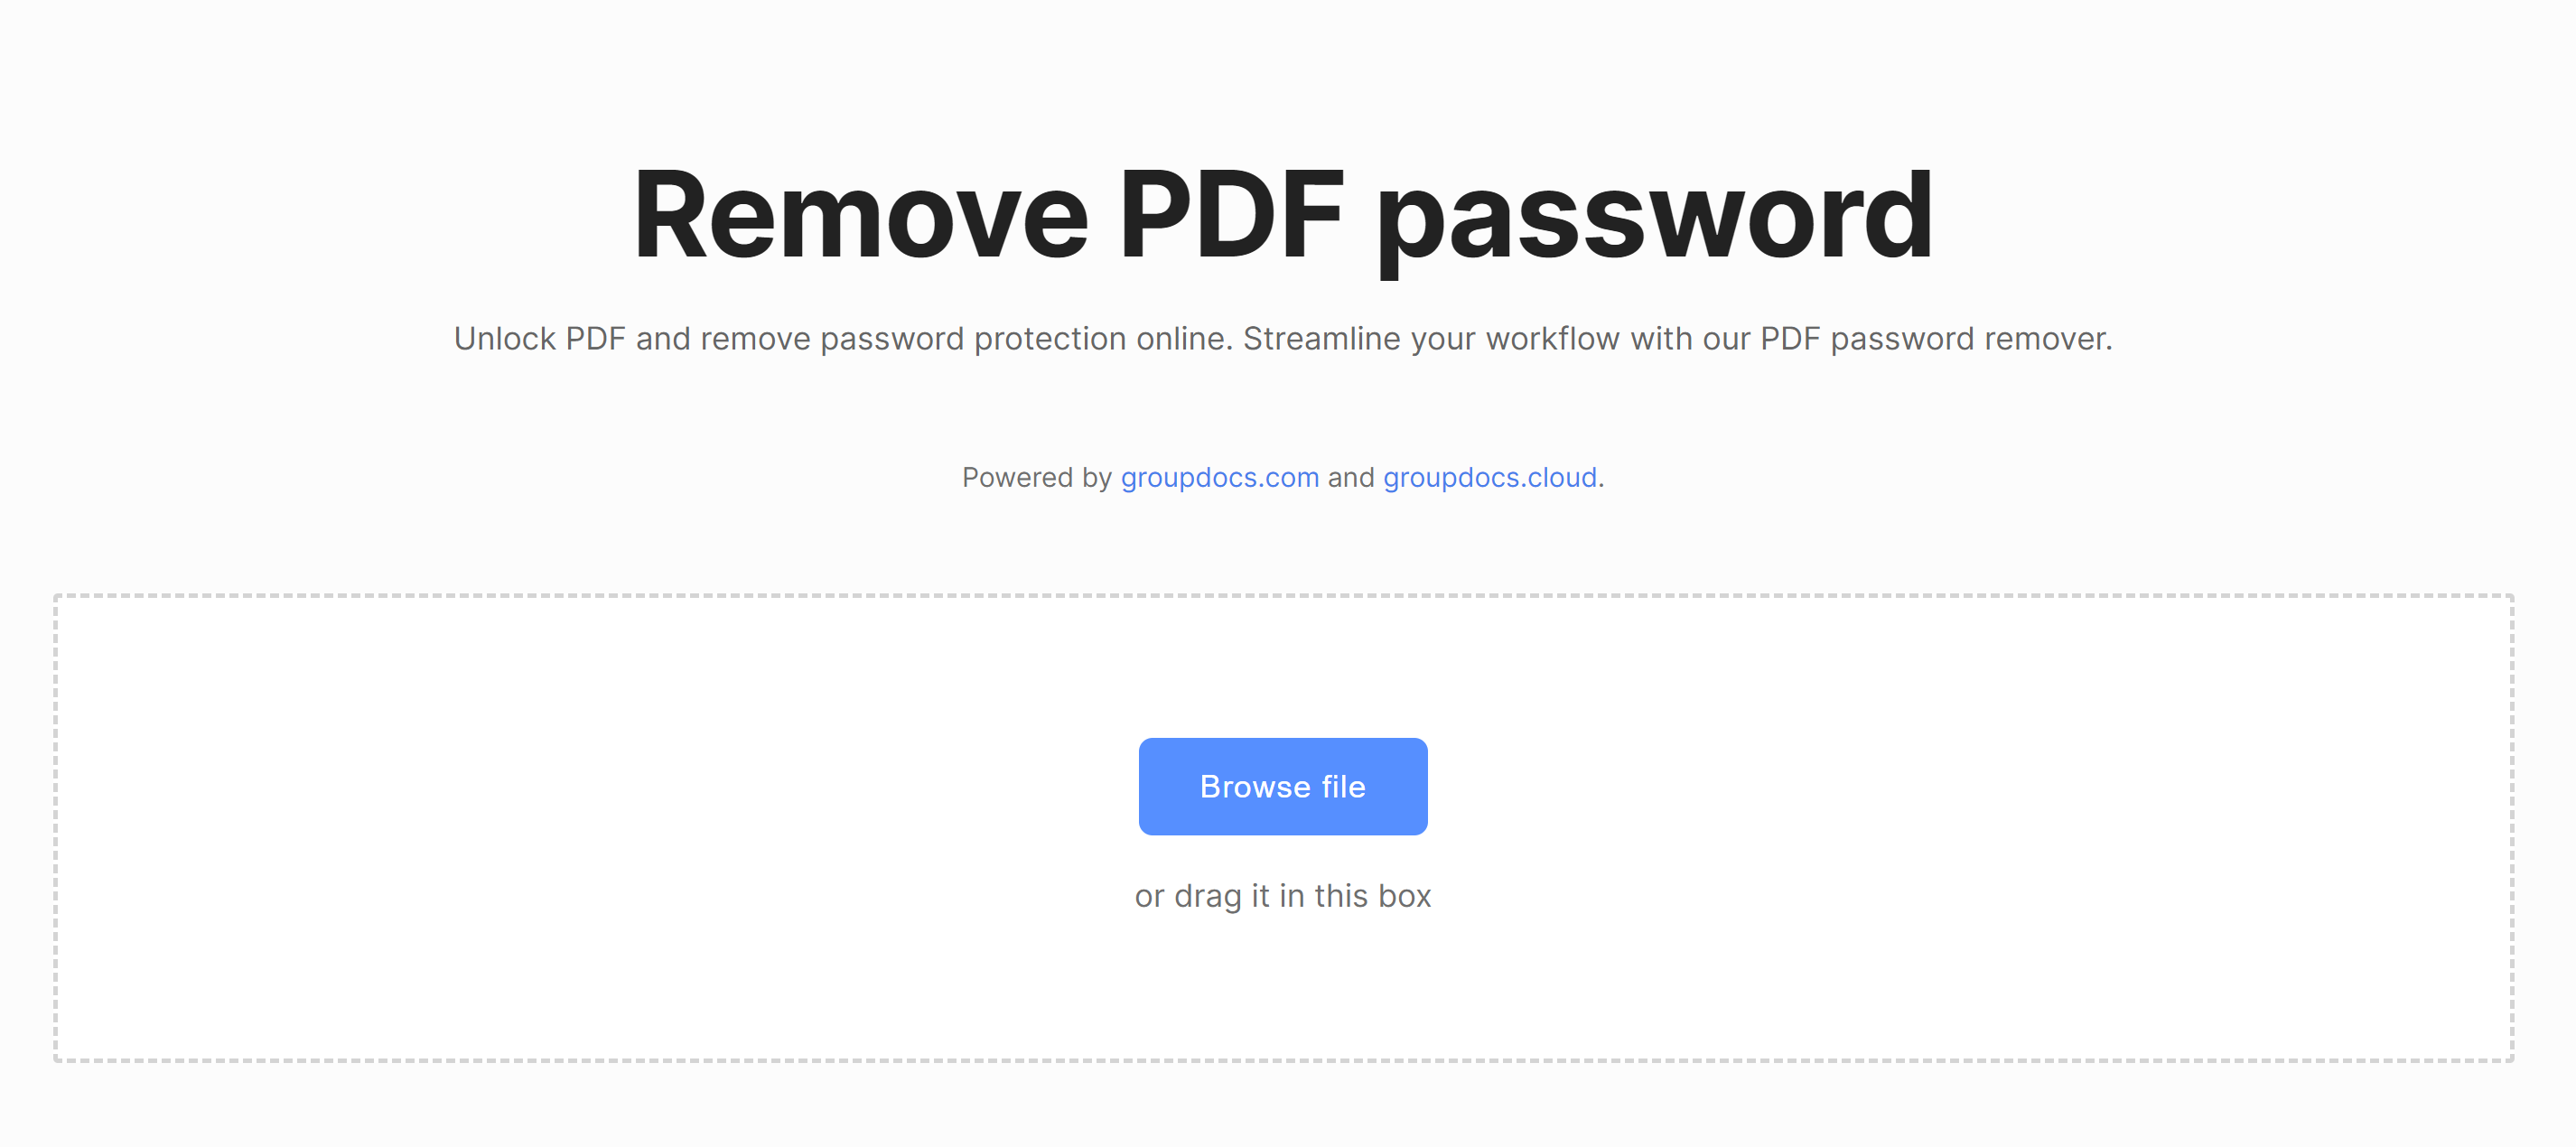 เครื่องมือลบรหัสผ่าน PDF ออนไลน์